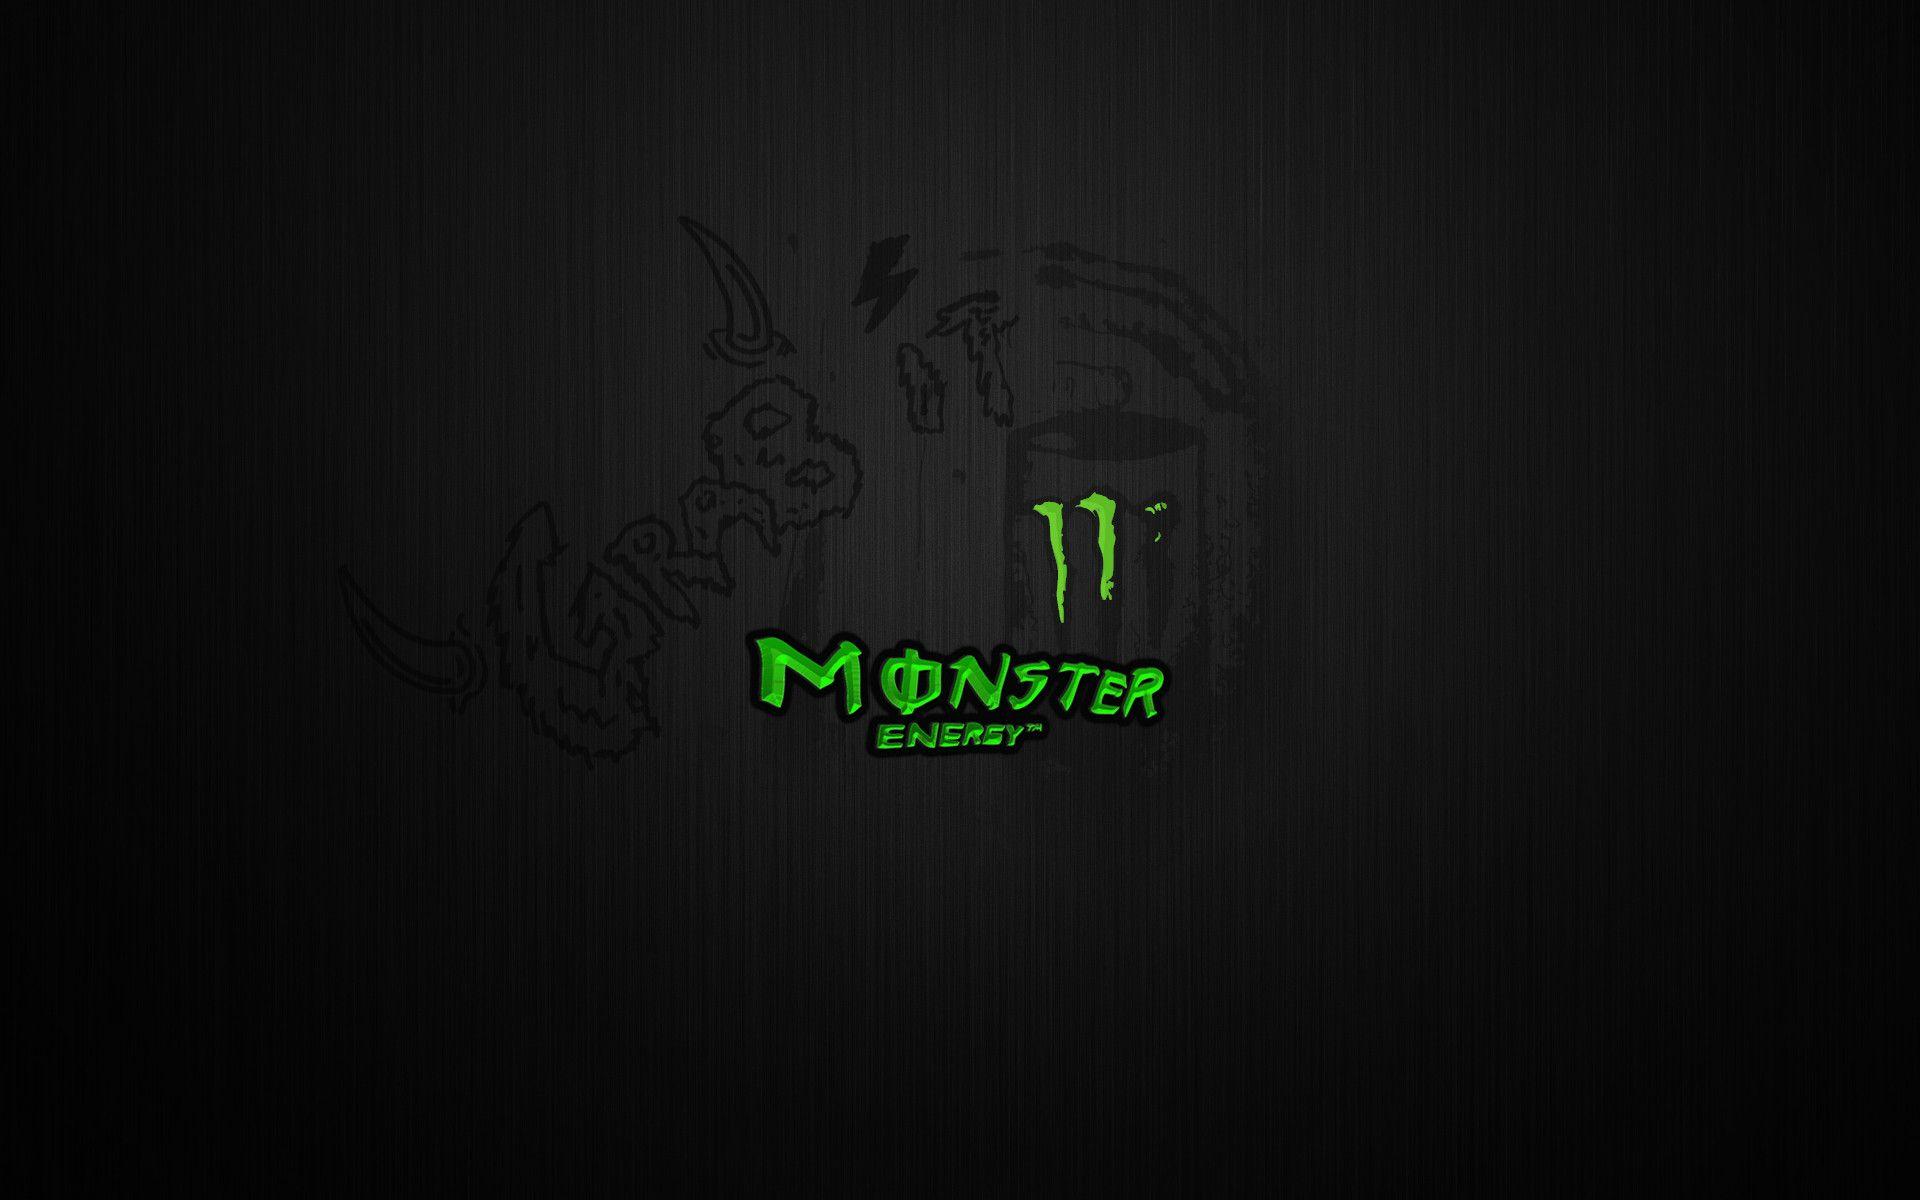 Monster Energy HD Wallpaper , Download 4K Wallpaper For Free